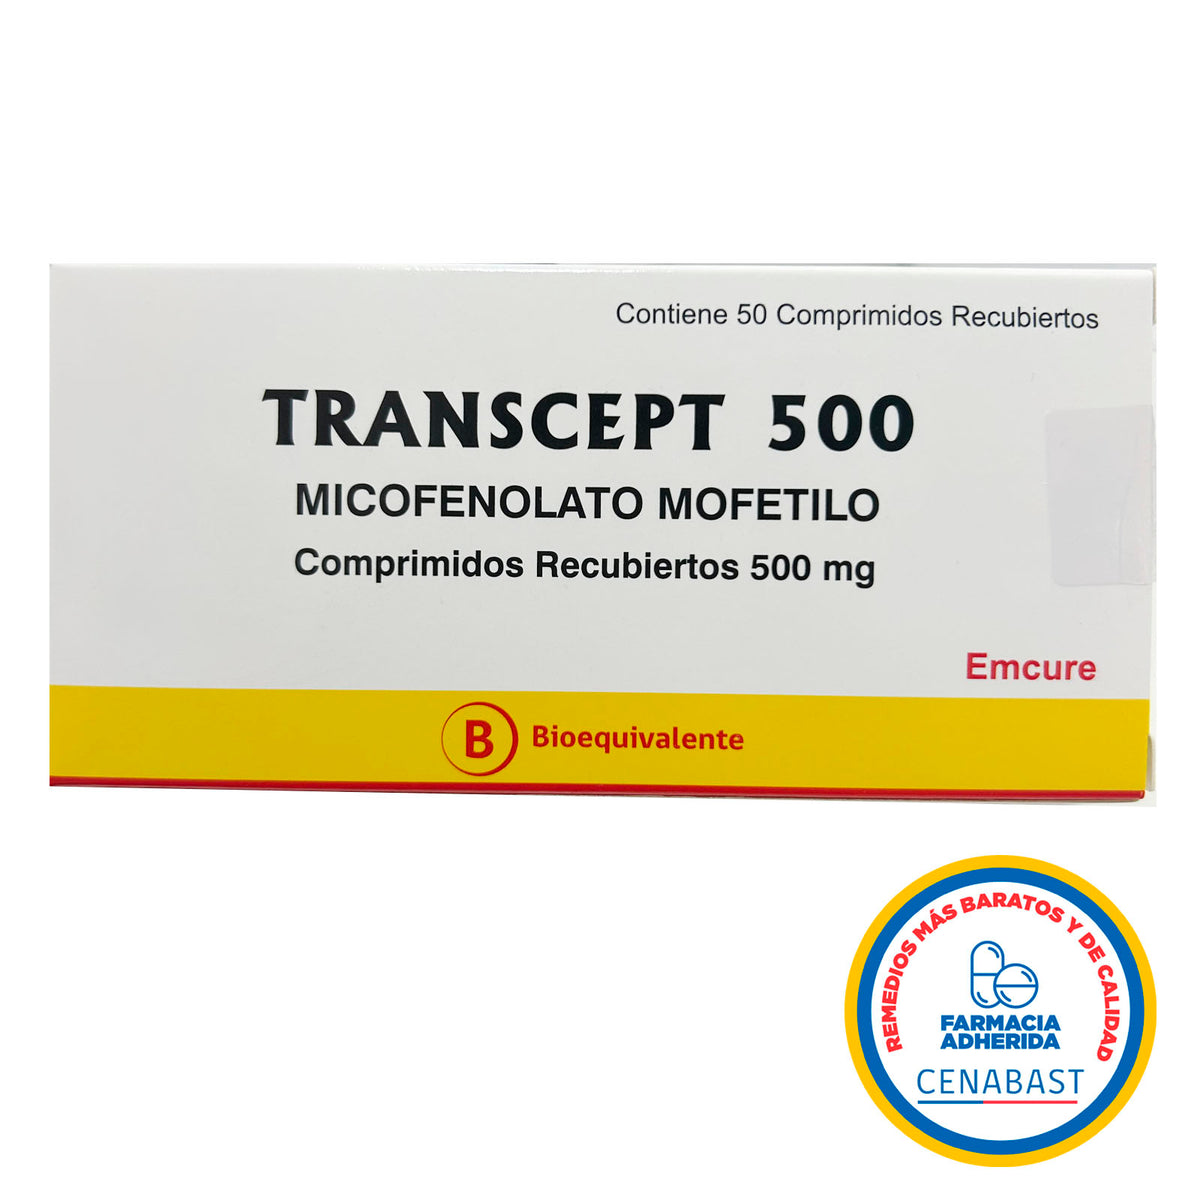 Transcept 500 Comprimidos Recubiertos Producto Cenabast